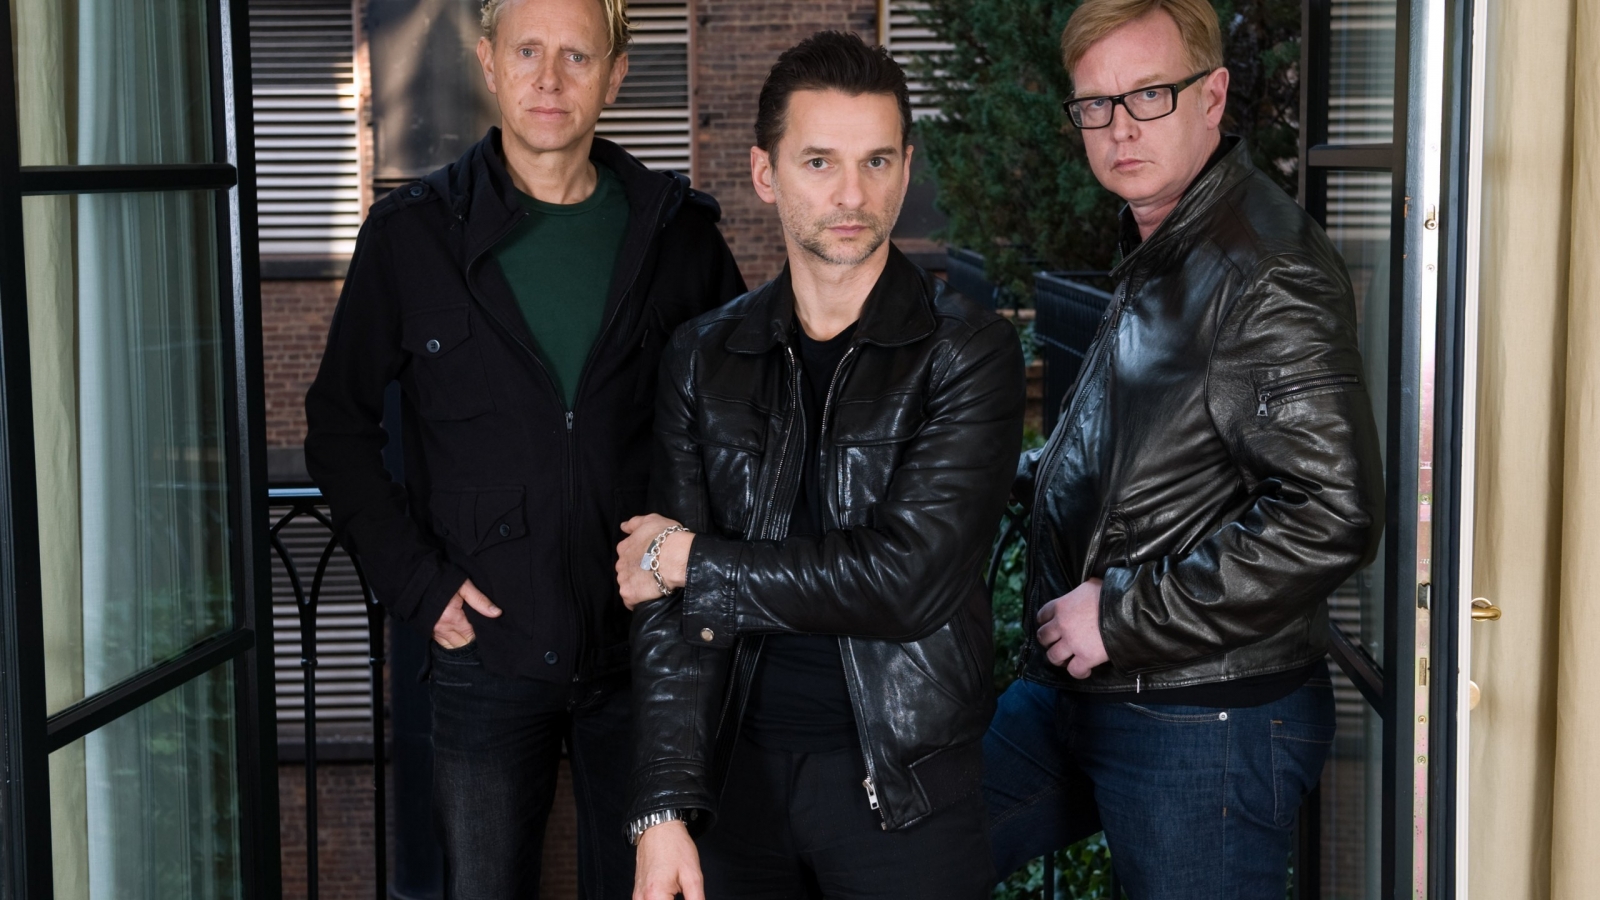 Depeche Mode Members Poster for 1600 x 900 HDTV resolution